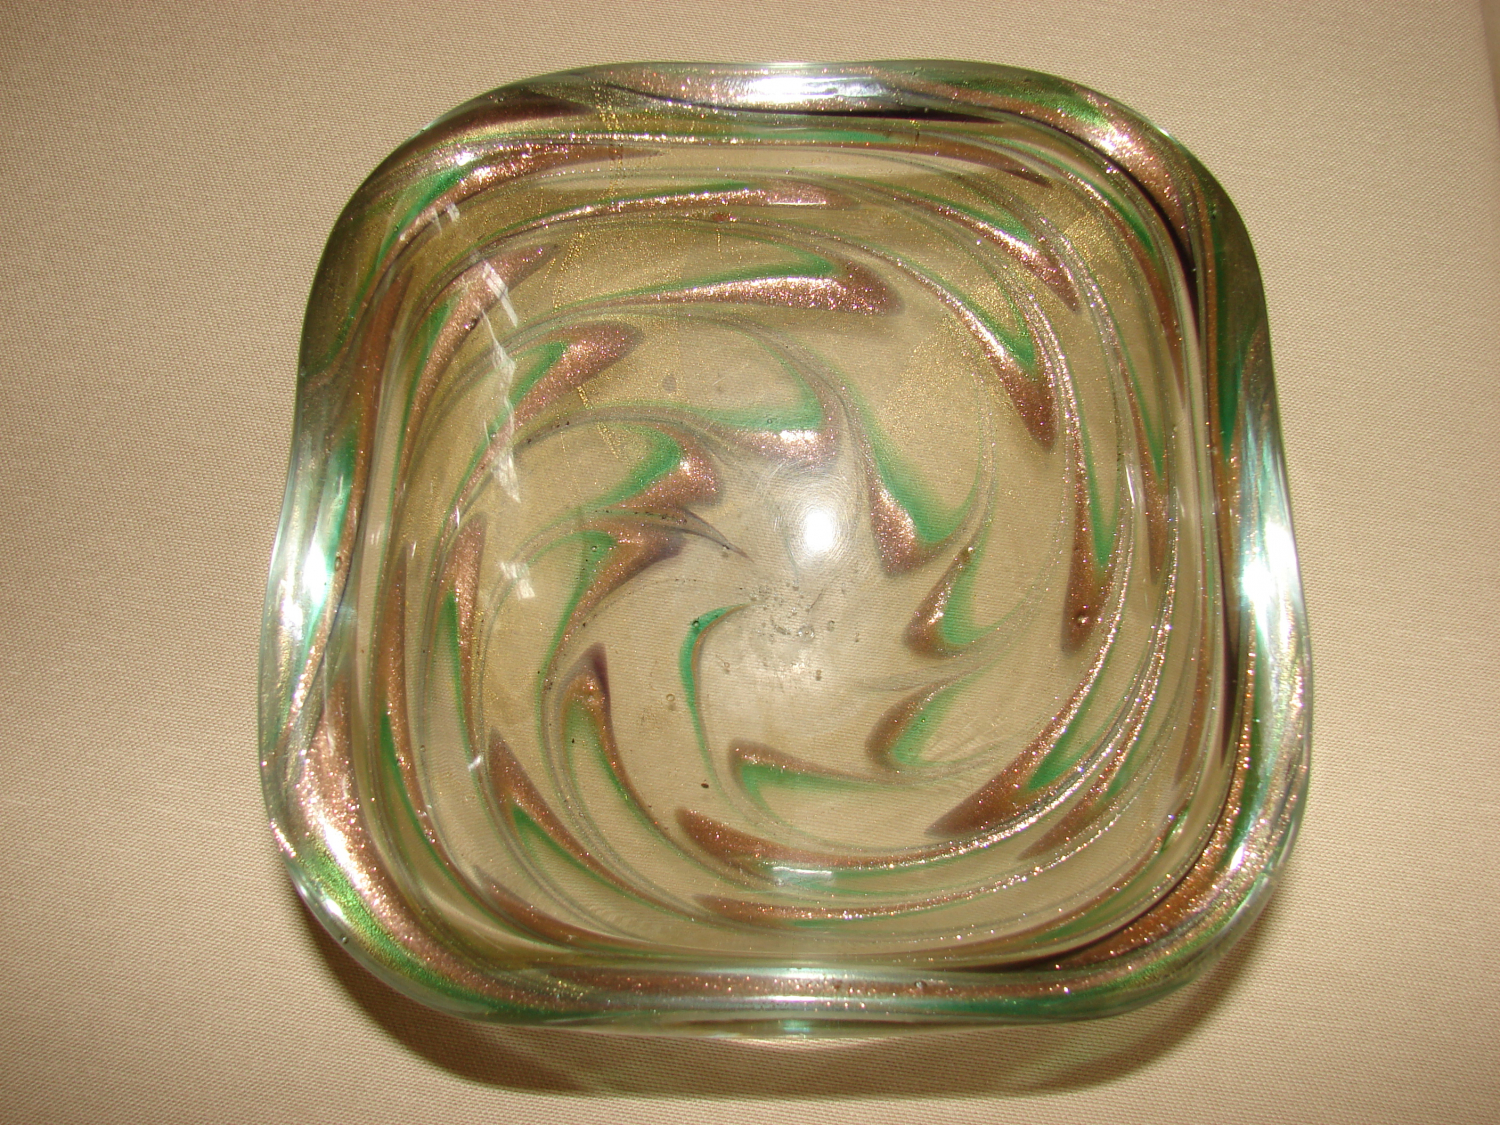 Zigzag glass bowl.